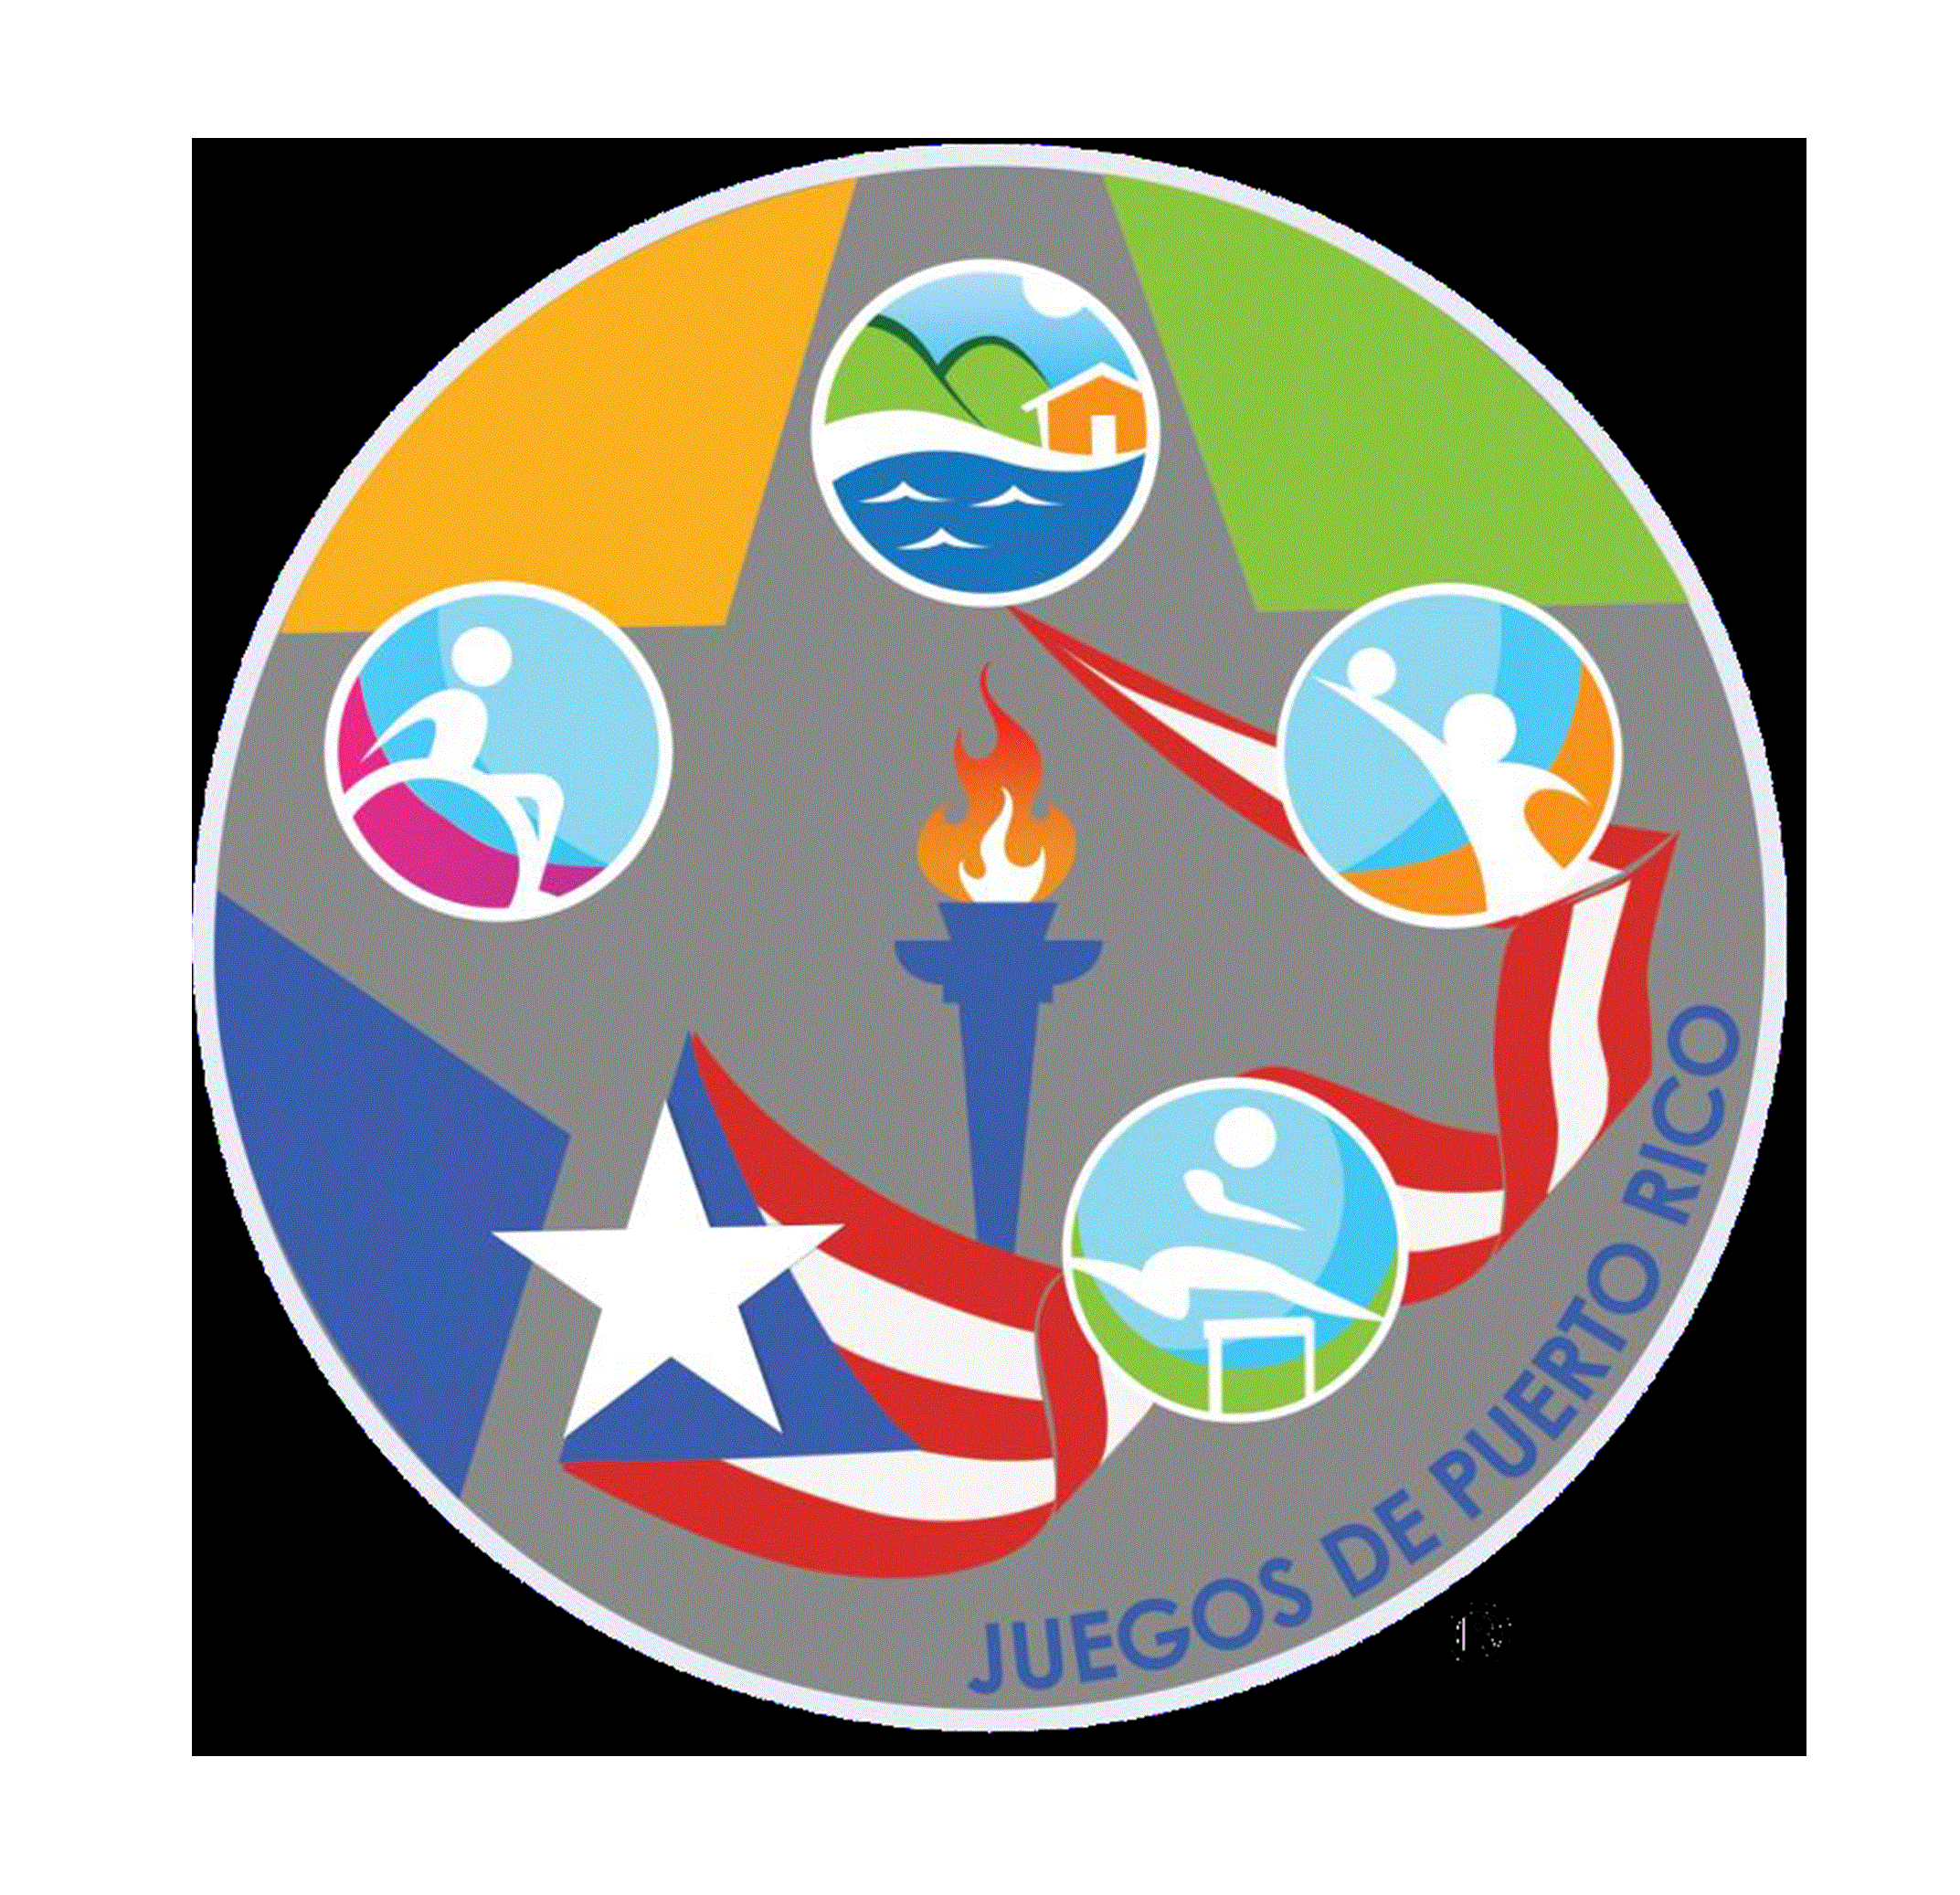 Juegos de Puerto Rico 2019 Pagina Principal